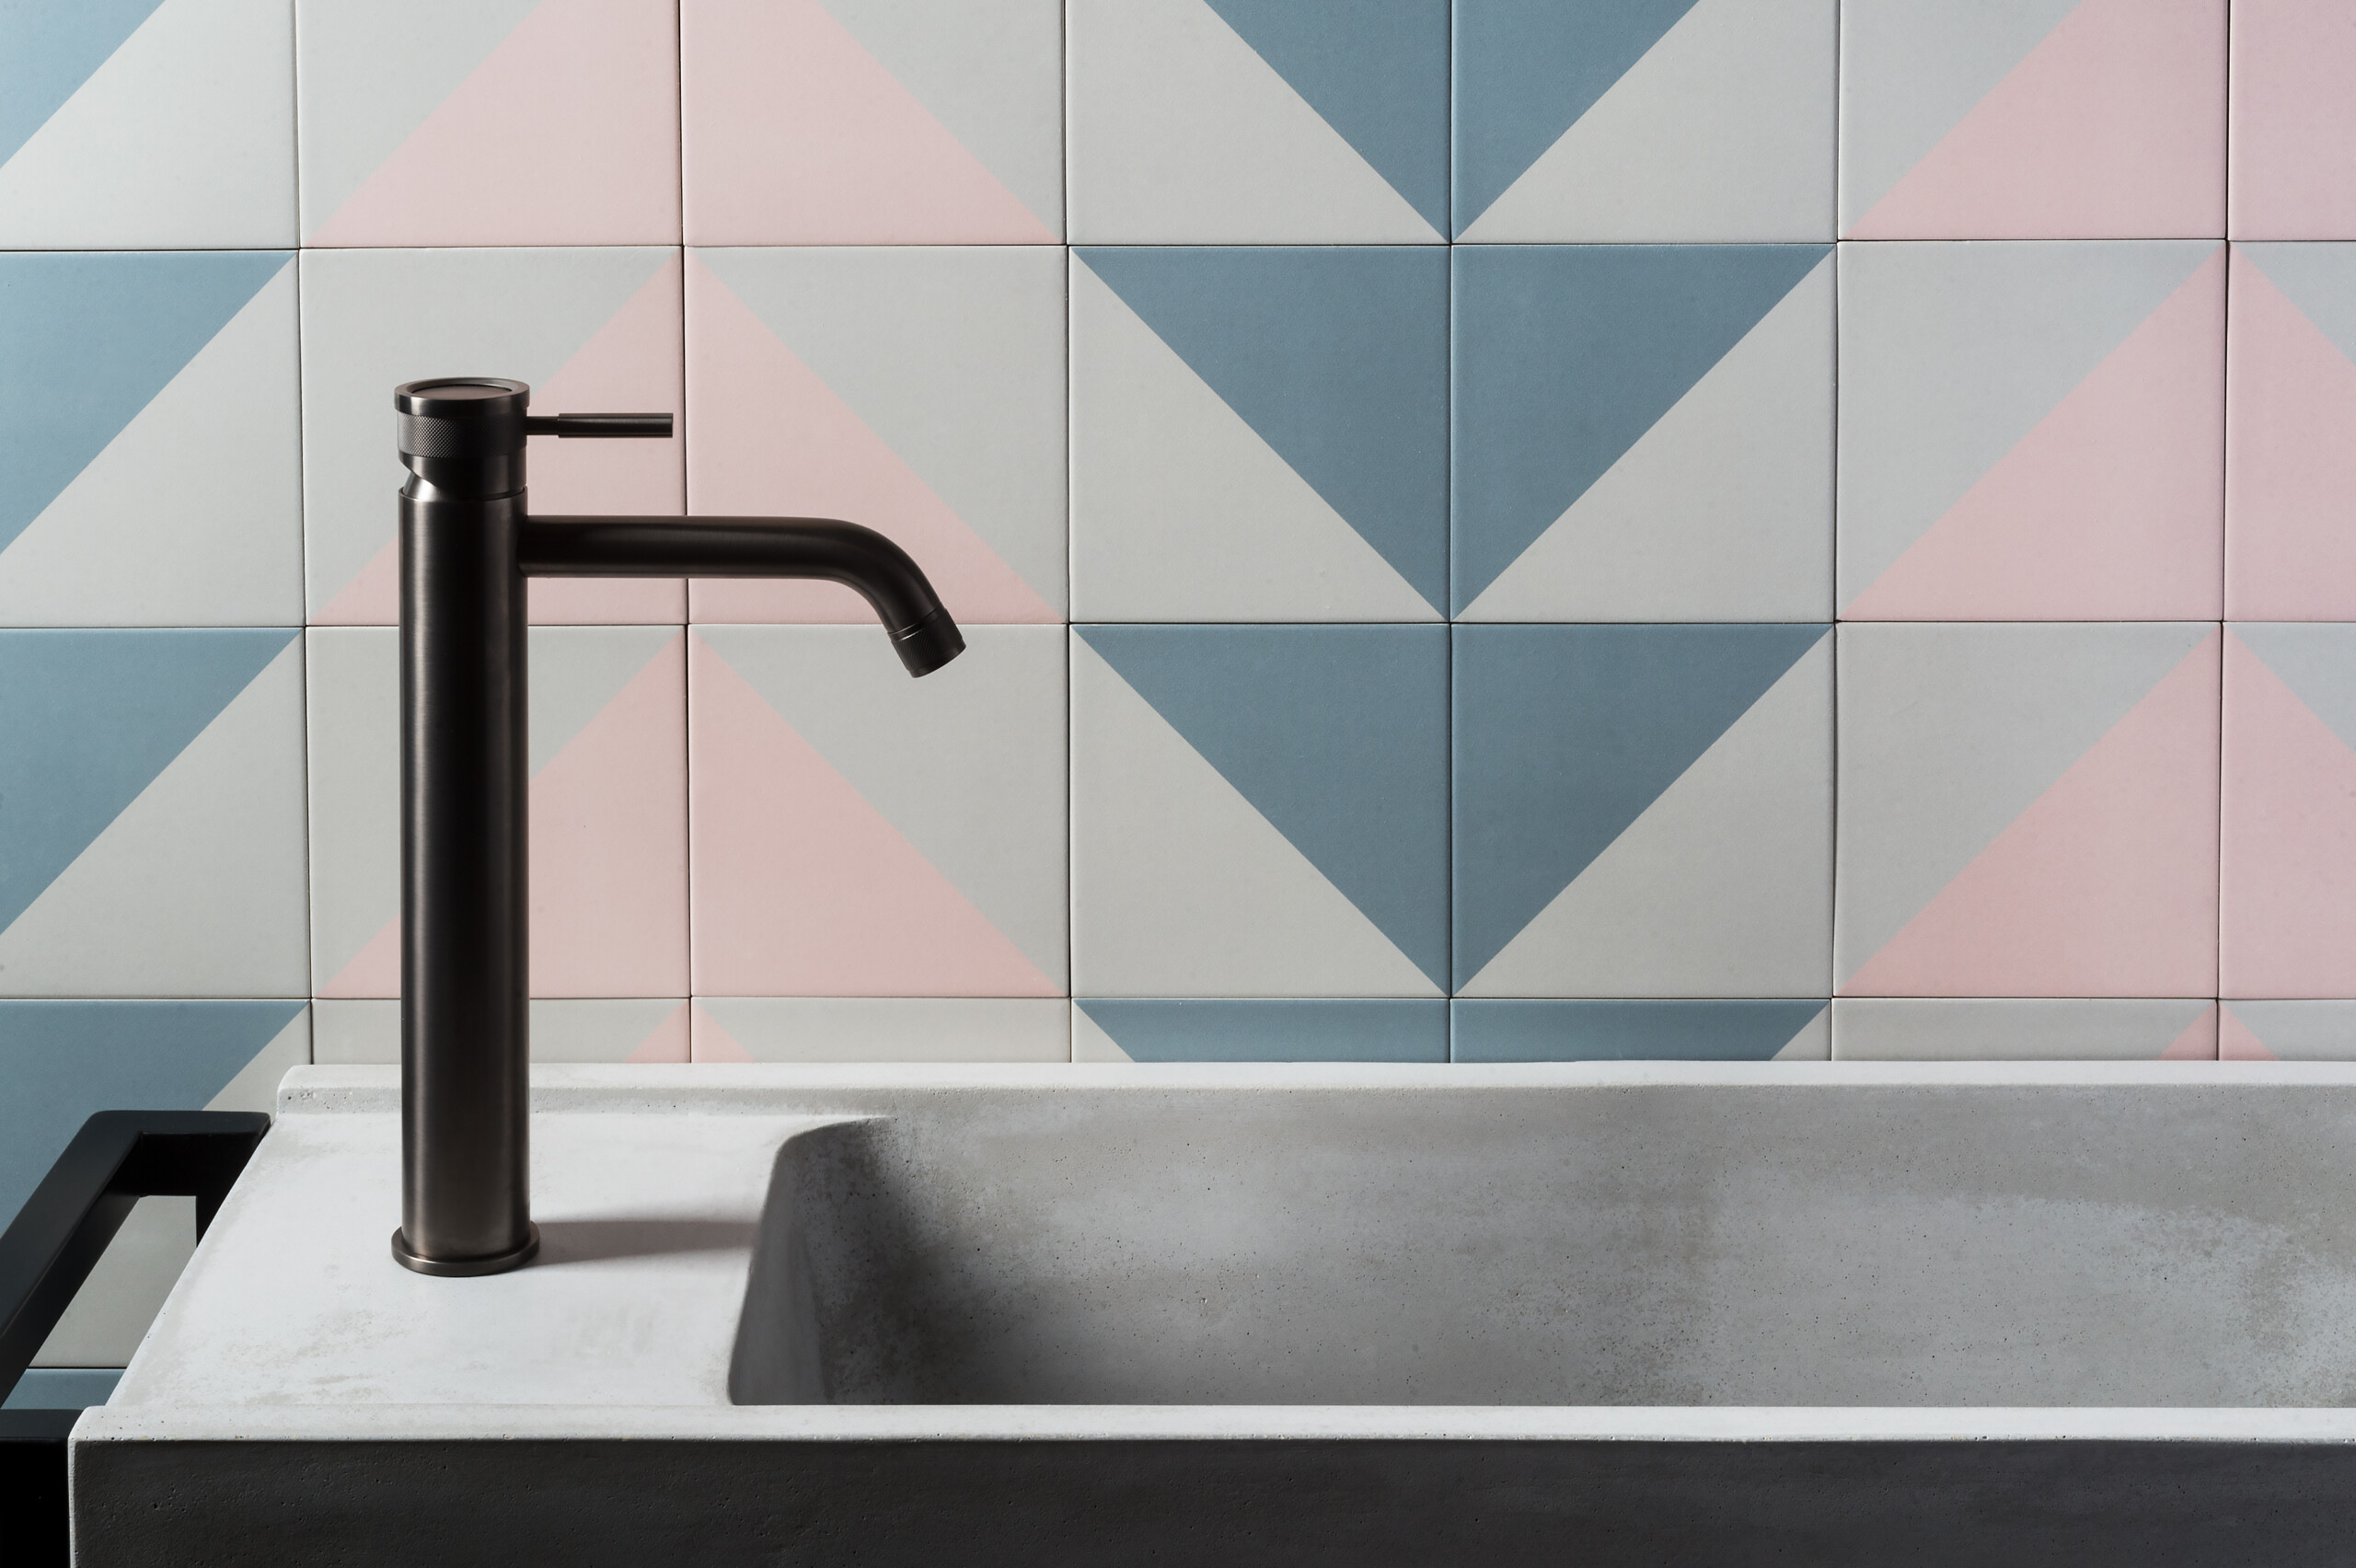 Due giovani imprenditori pugliesi hanno dato vita ad uno spazio di design dedicato a rubinetteria in acciaio inox per il bagno e la cucina